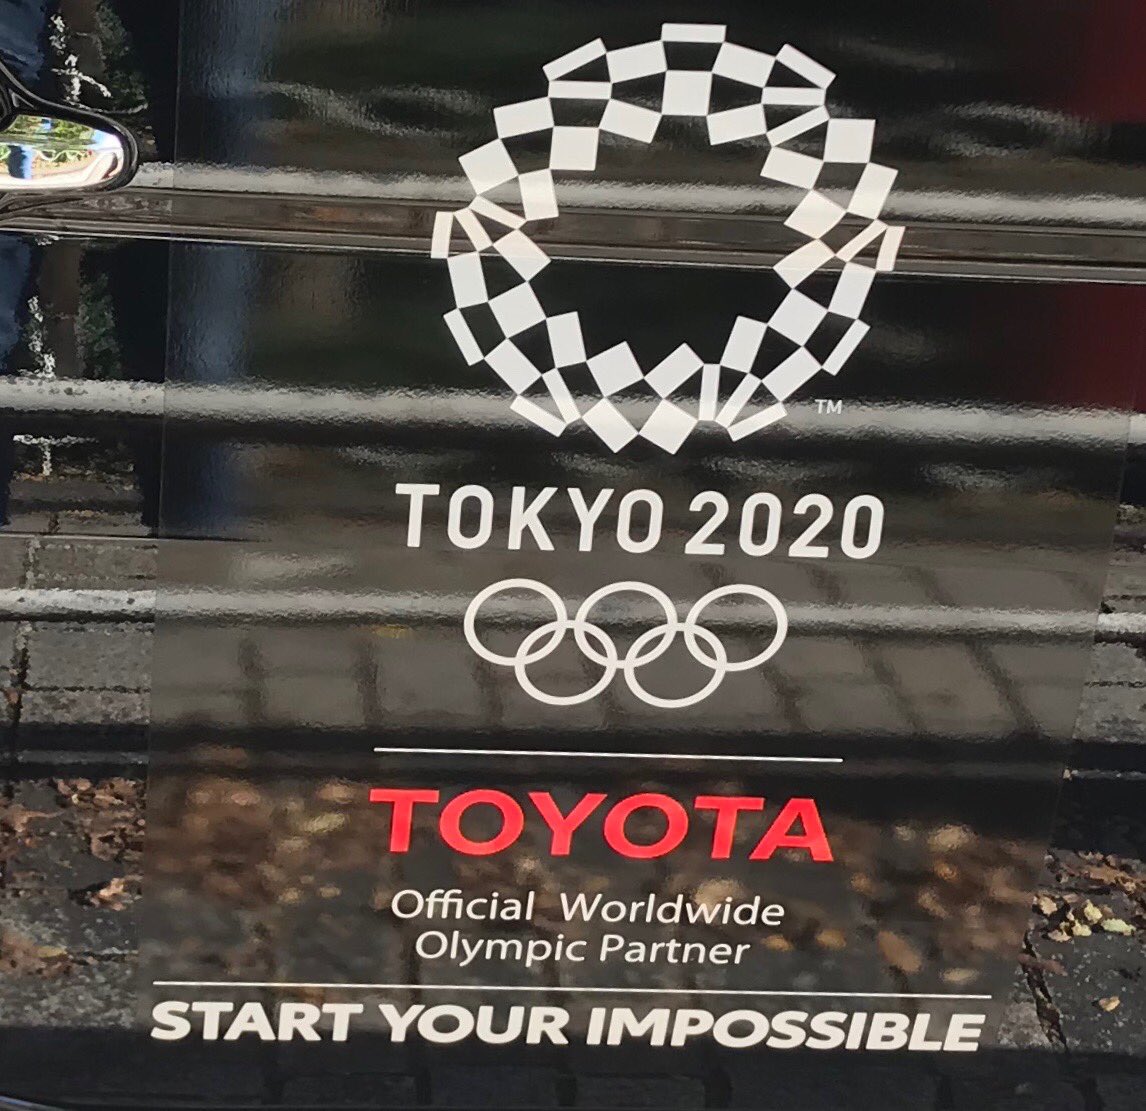 Robert Geller Toyotaのスローガン Start Your Impossible は3つの英単語の列挙だが 決して英語ではない 意味不明 欠陥商品で エンジンをスタートすることは出来ない と意味するのか